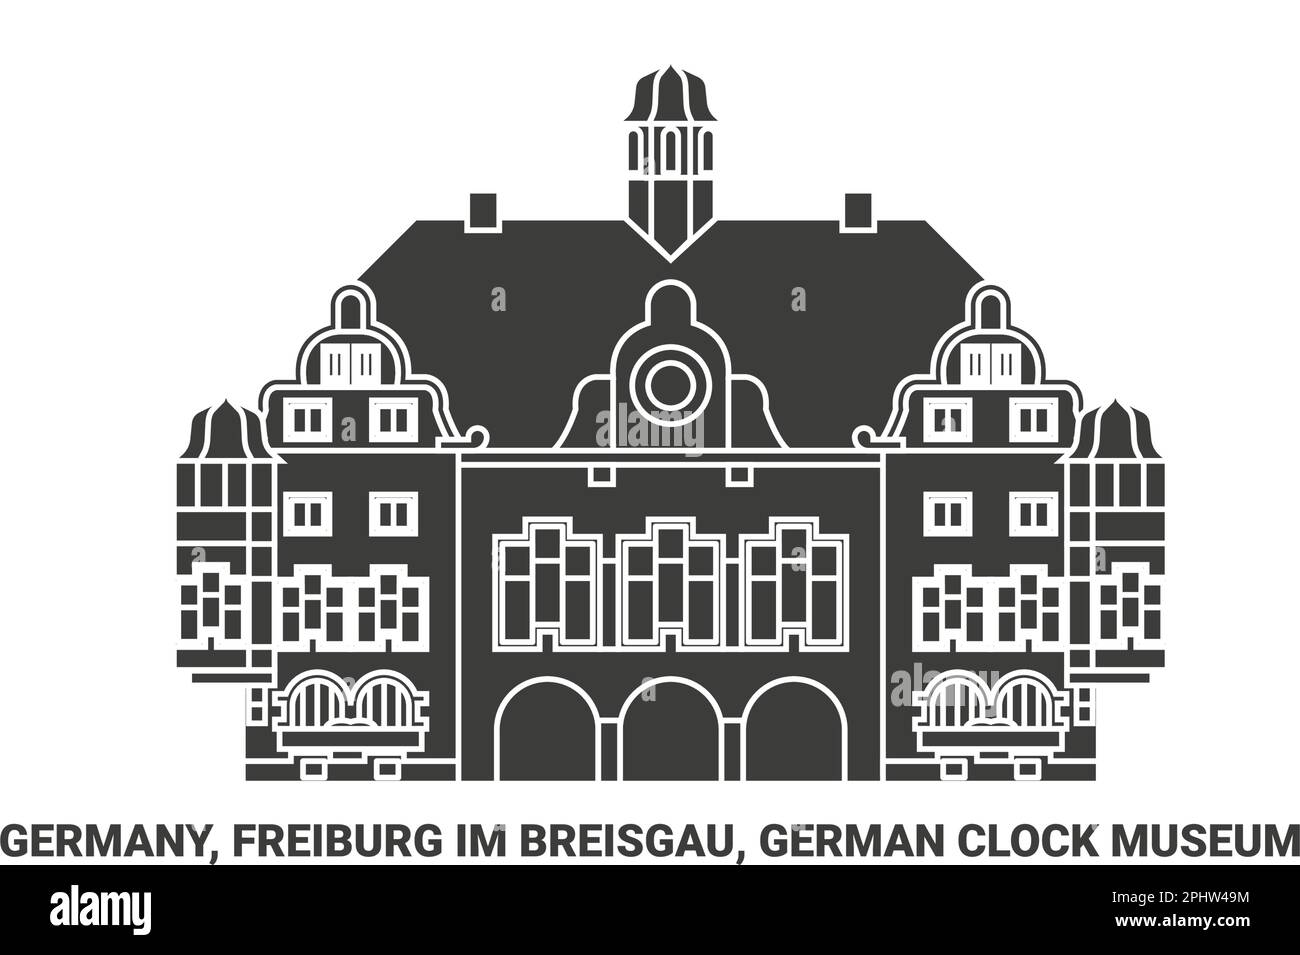 Deutschland, Freiburg im Breisgau, Deutsches Uhrenmuseum Reise-Wahrzeichen-Vektordarstellung Stock Vektor